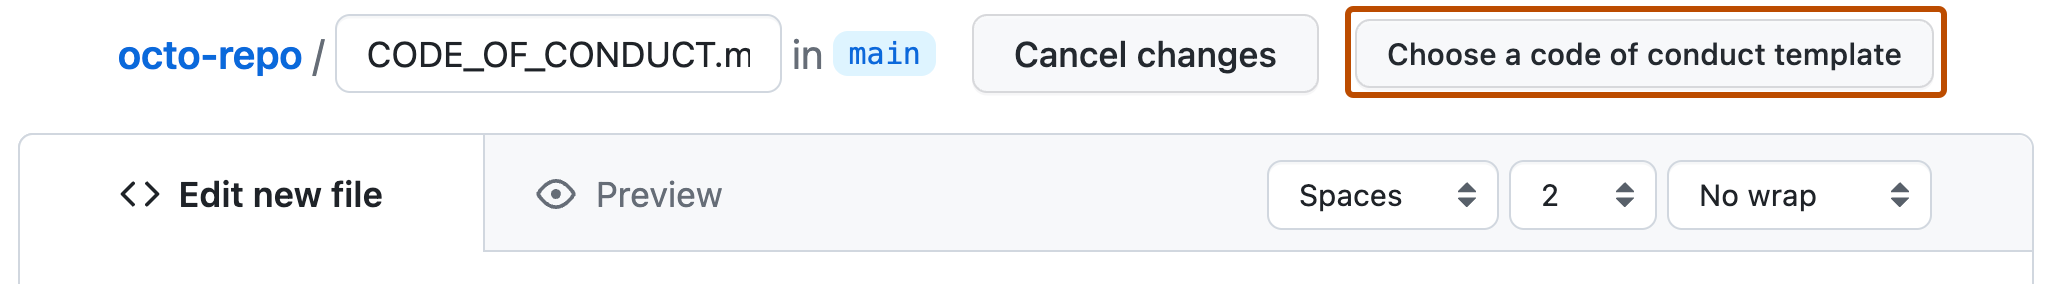 Capture d’écran d’un dépôt GitHub montrant un nouveau fichier markdown en cours de création. Un bouton à droite, intitulé « Choisir un modèle de code de conduite », est encadré en orange foncé.